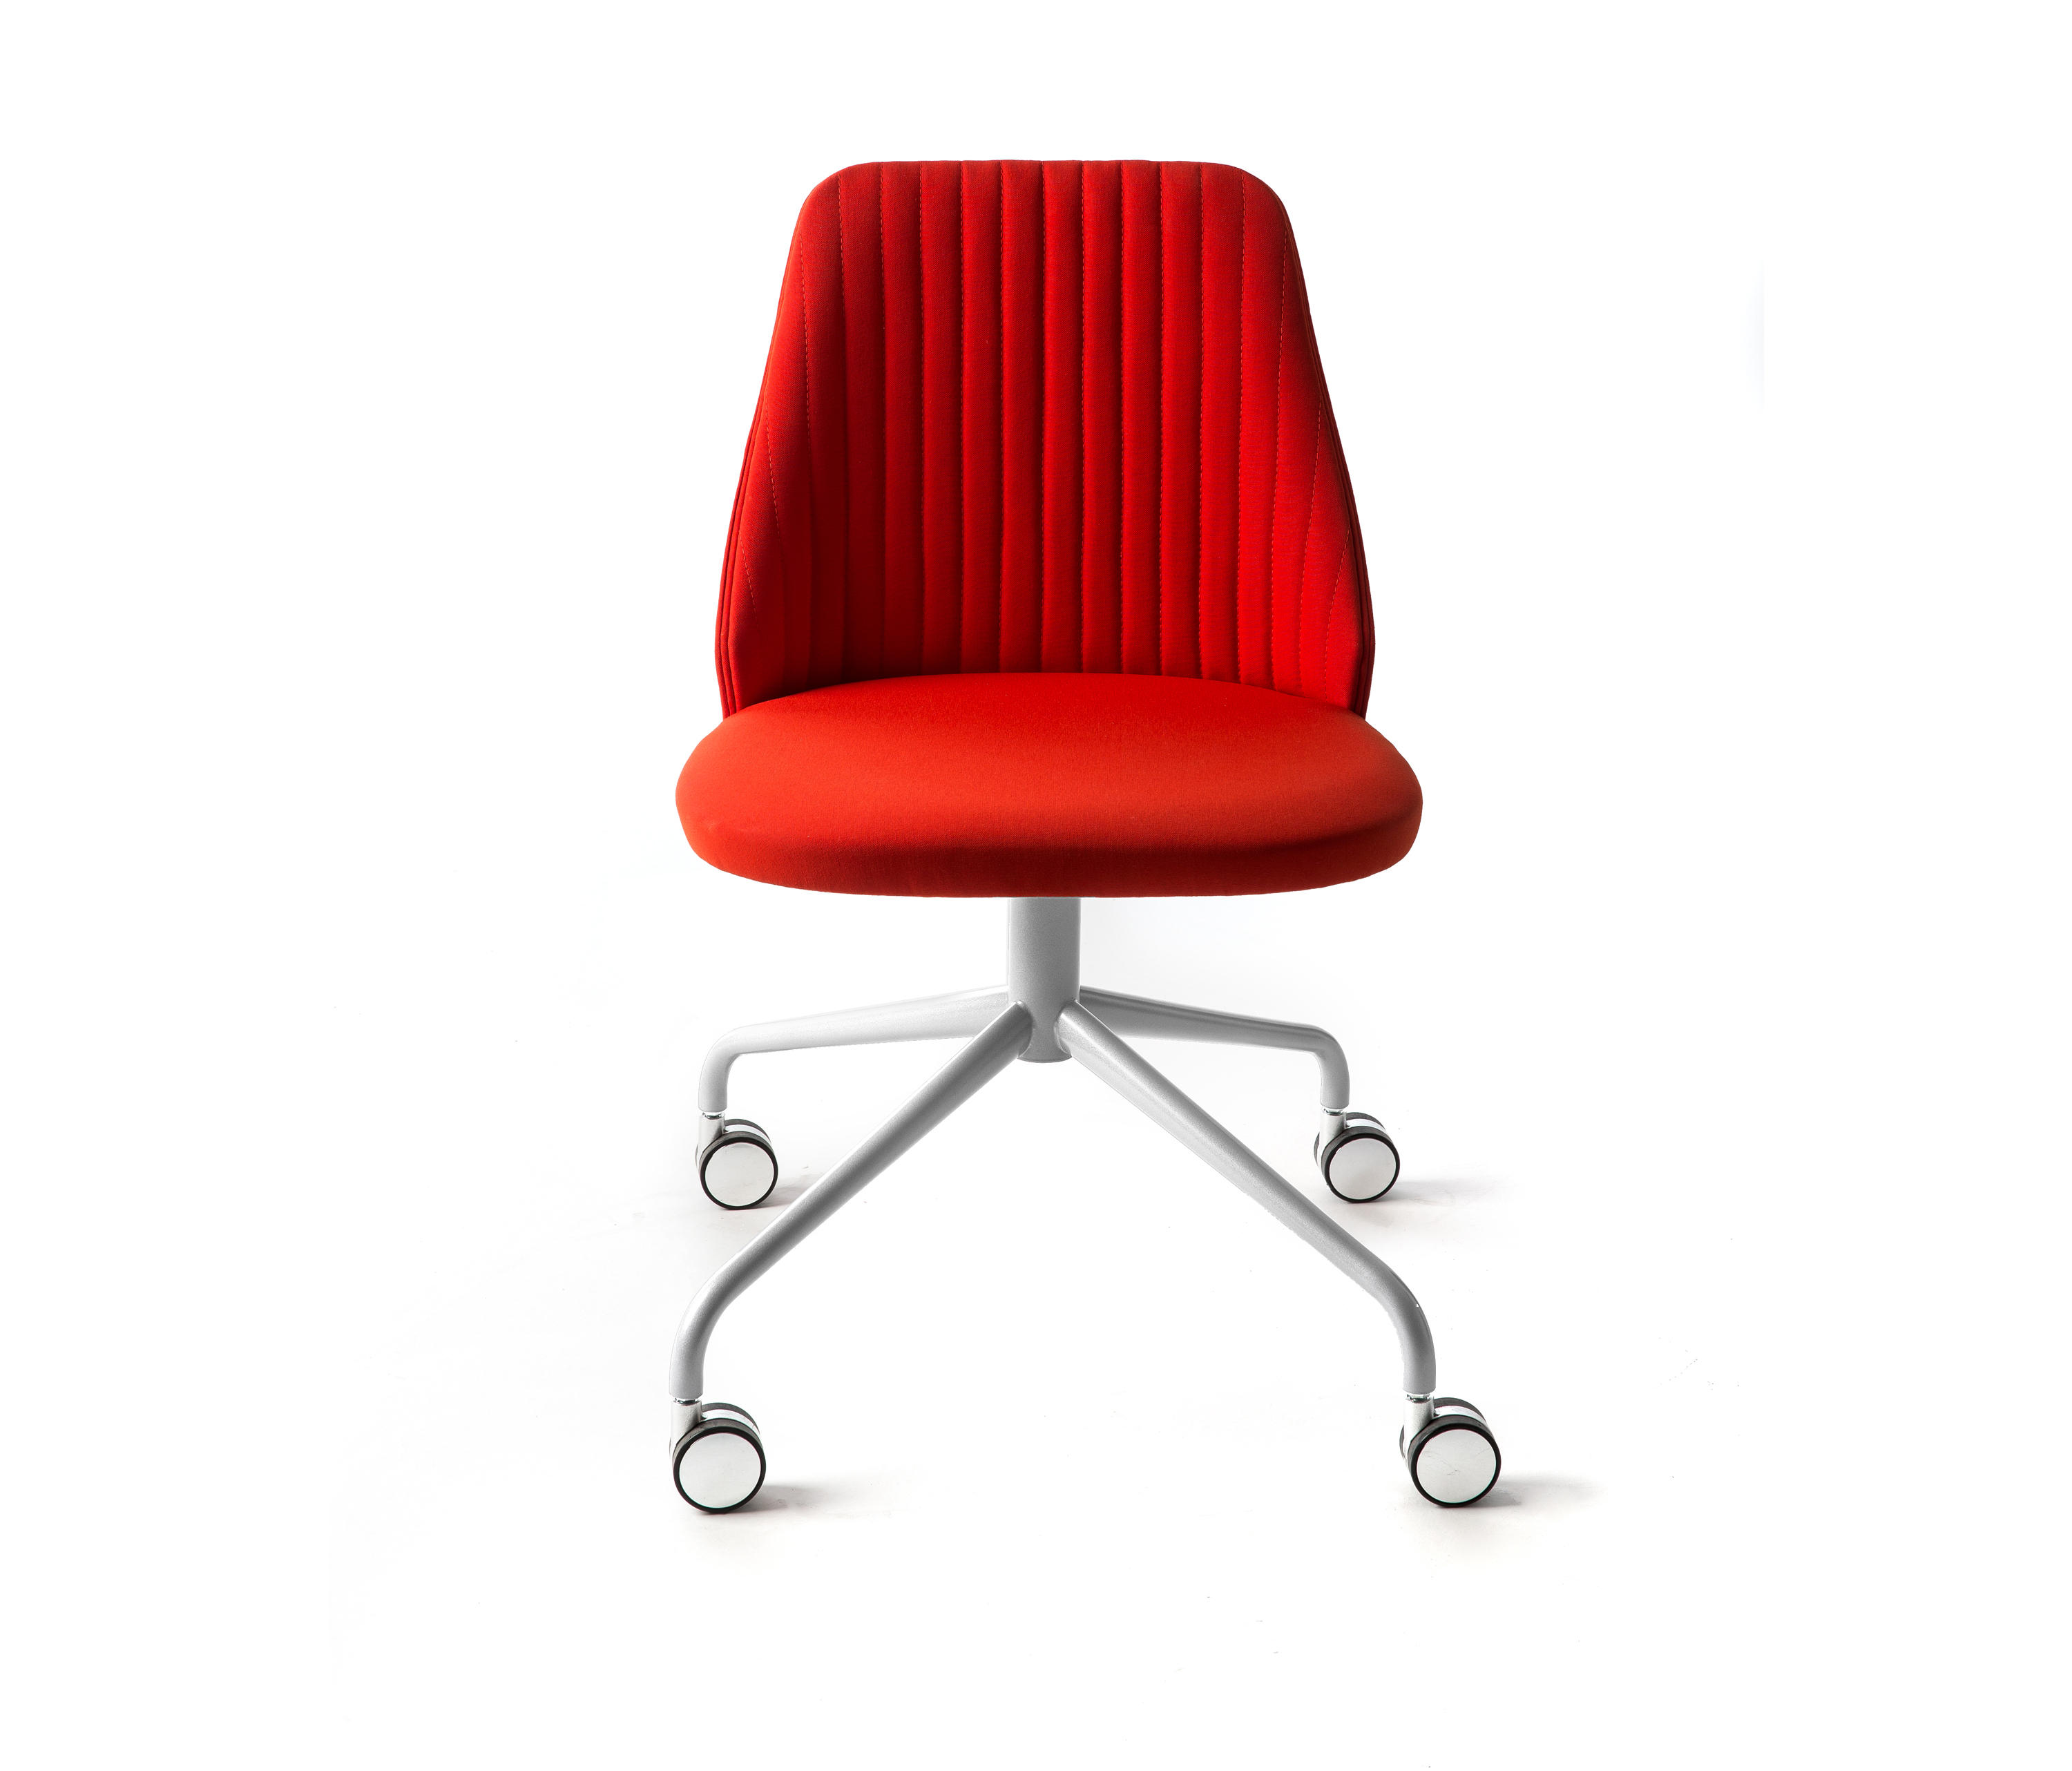 Breaks chair. Кресло без спинки. Кресло Enzo. Кресло Bross Italia 2019 1570. Красные мягкие офисные стулья без фона.